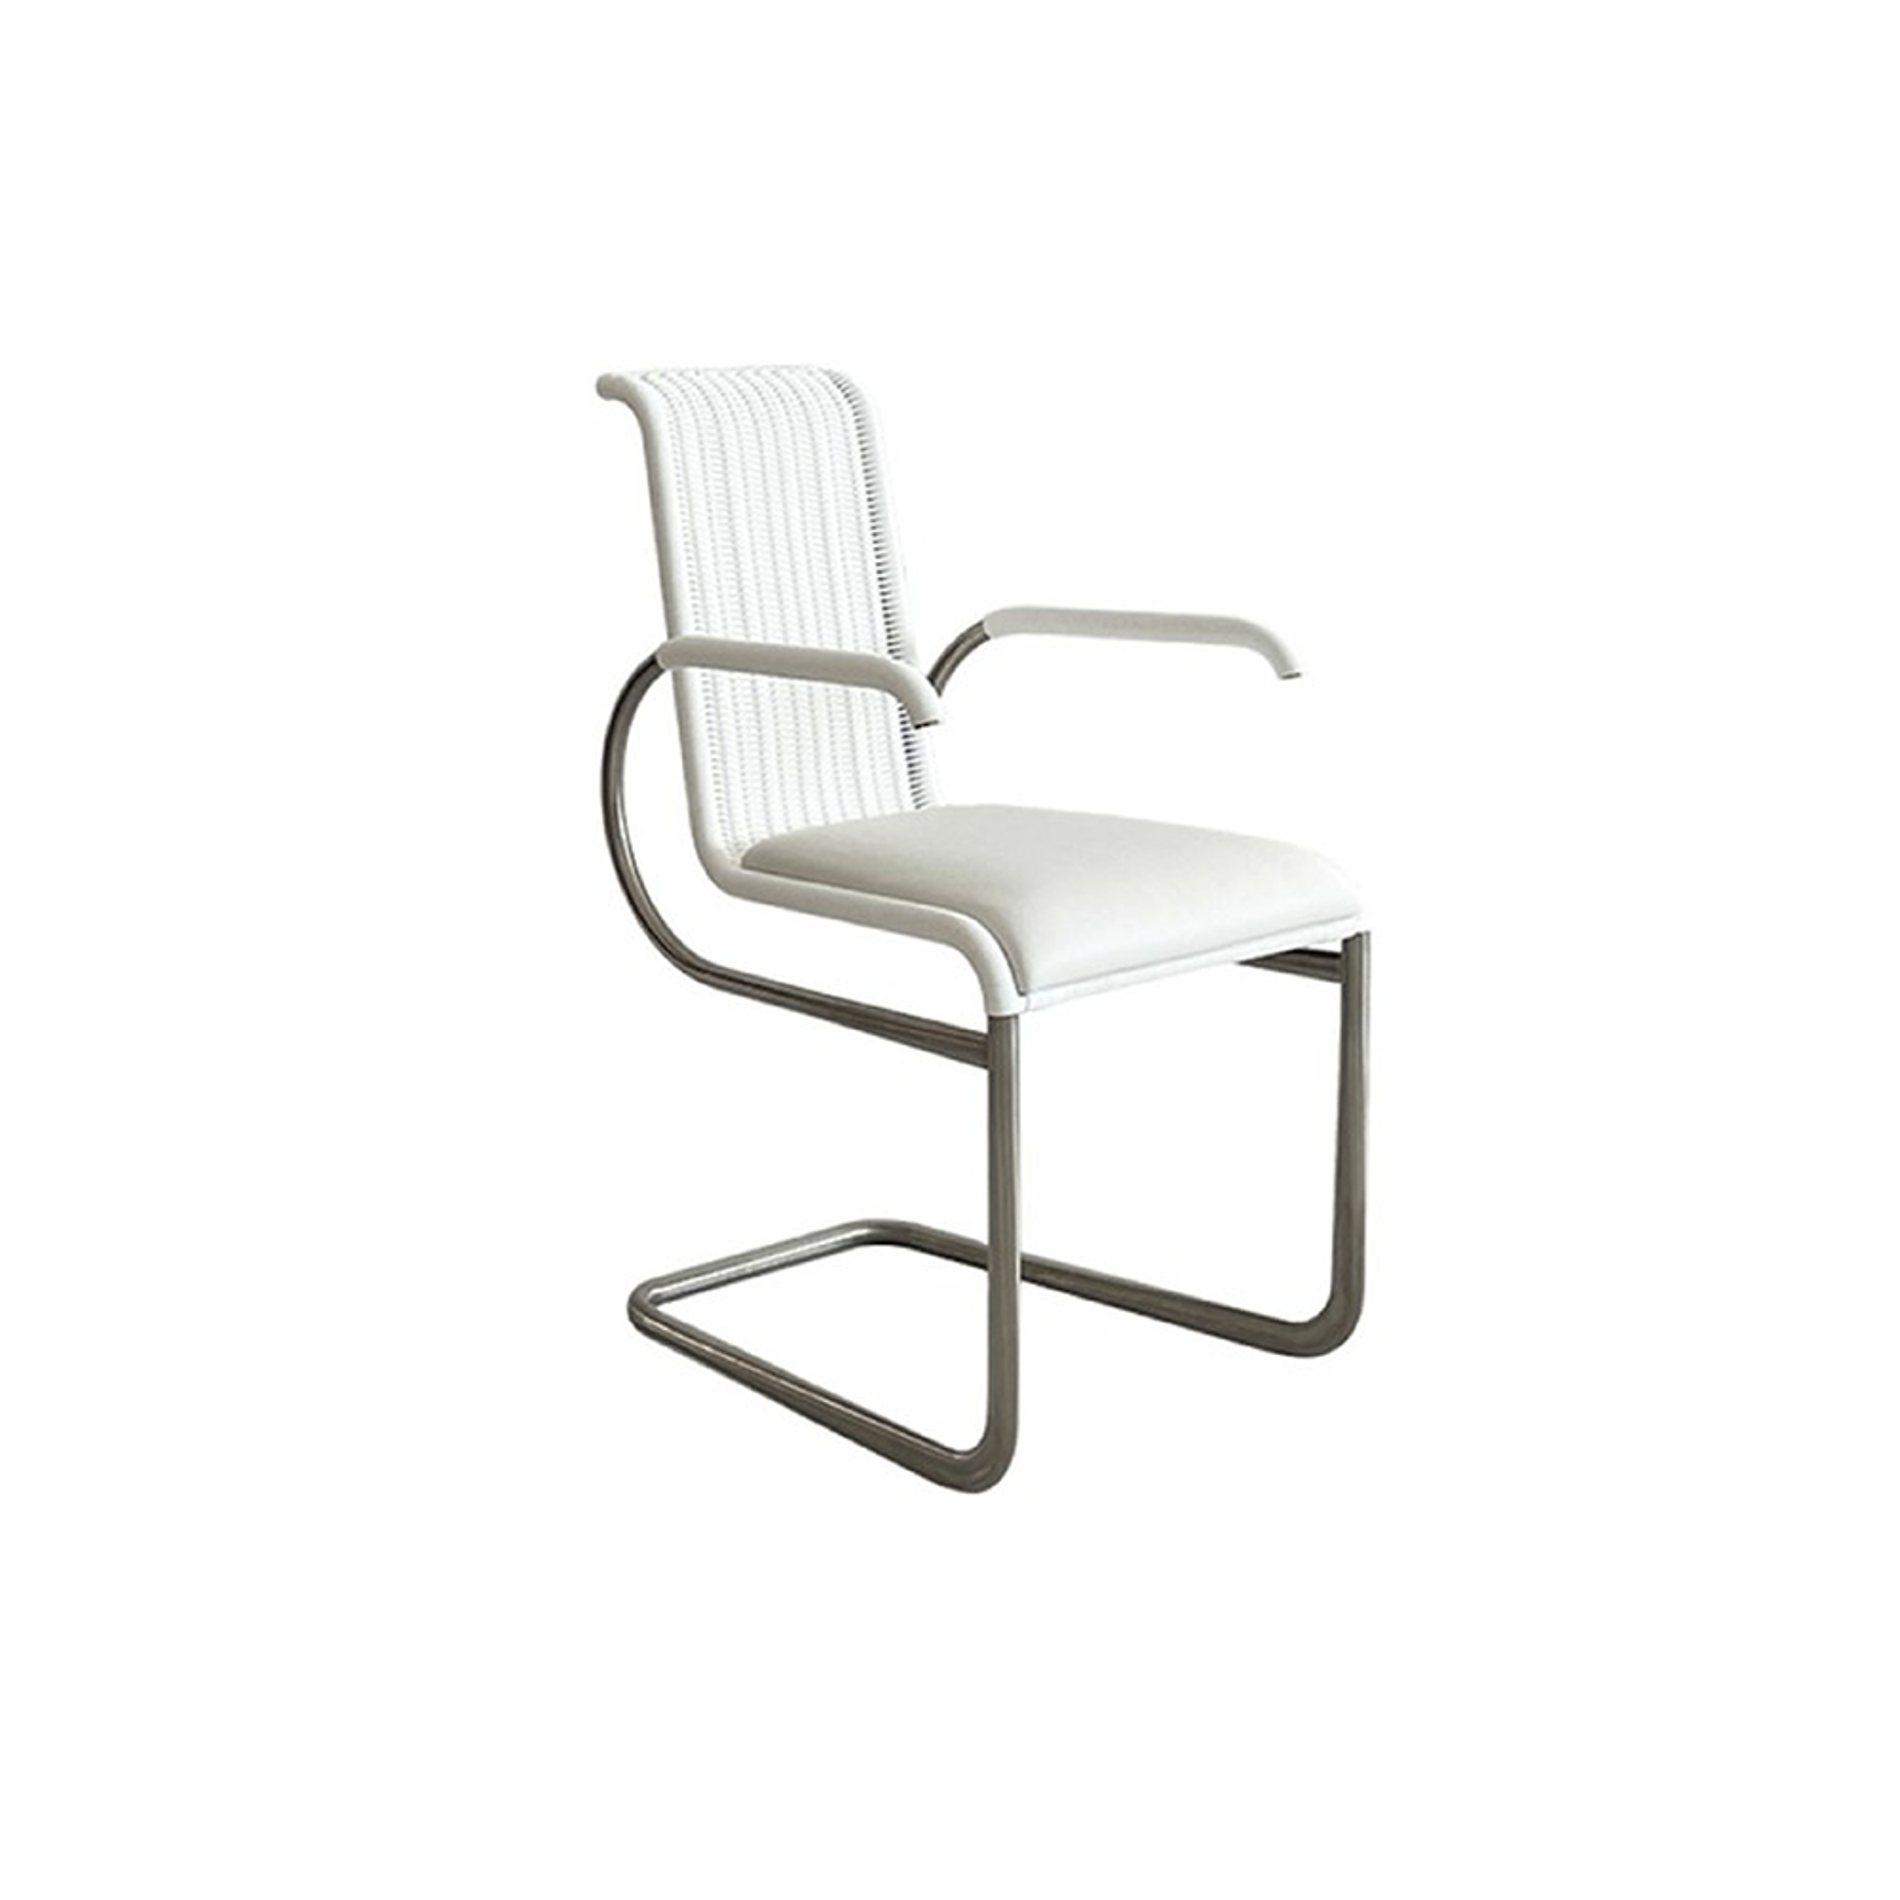 TECTA D22i Cantilever Chair - Cream White